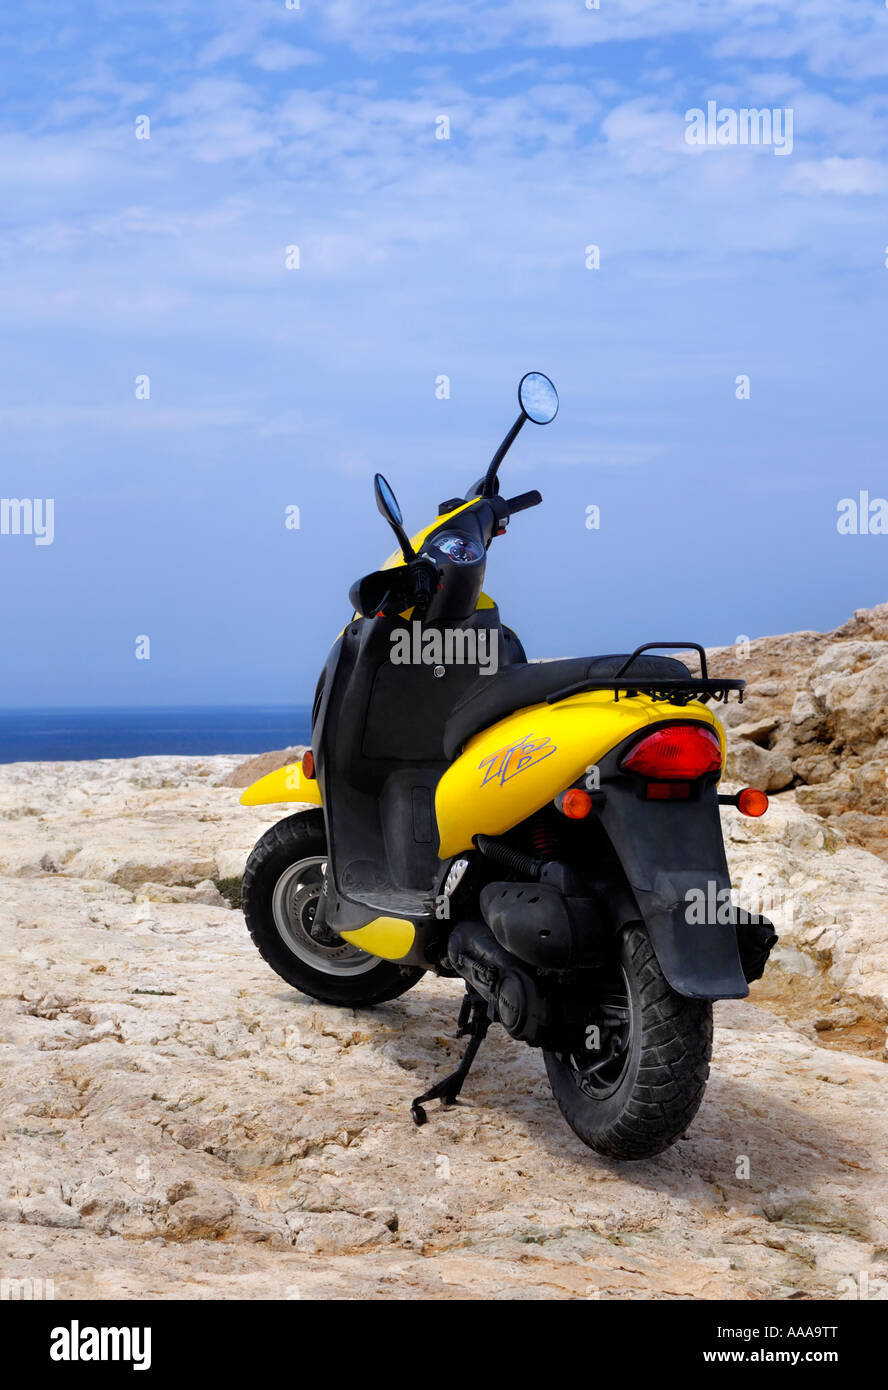 Kymco Motorroller auf einer felsigen Küste Motorrad bike Stockfoto